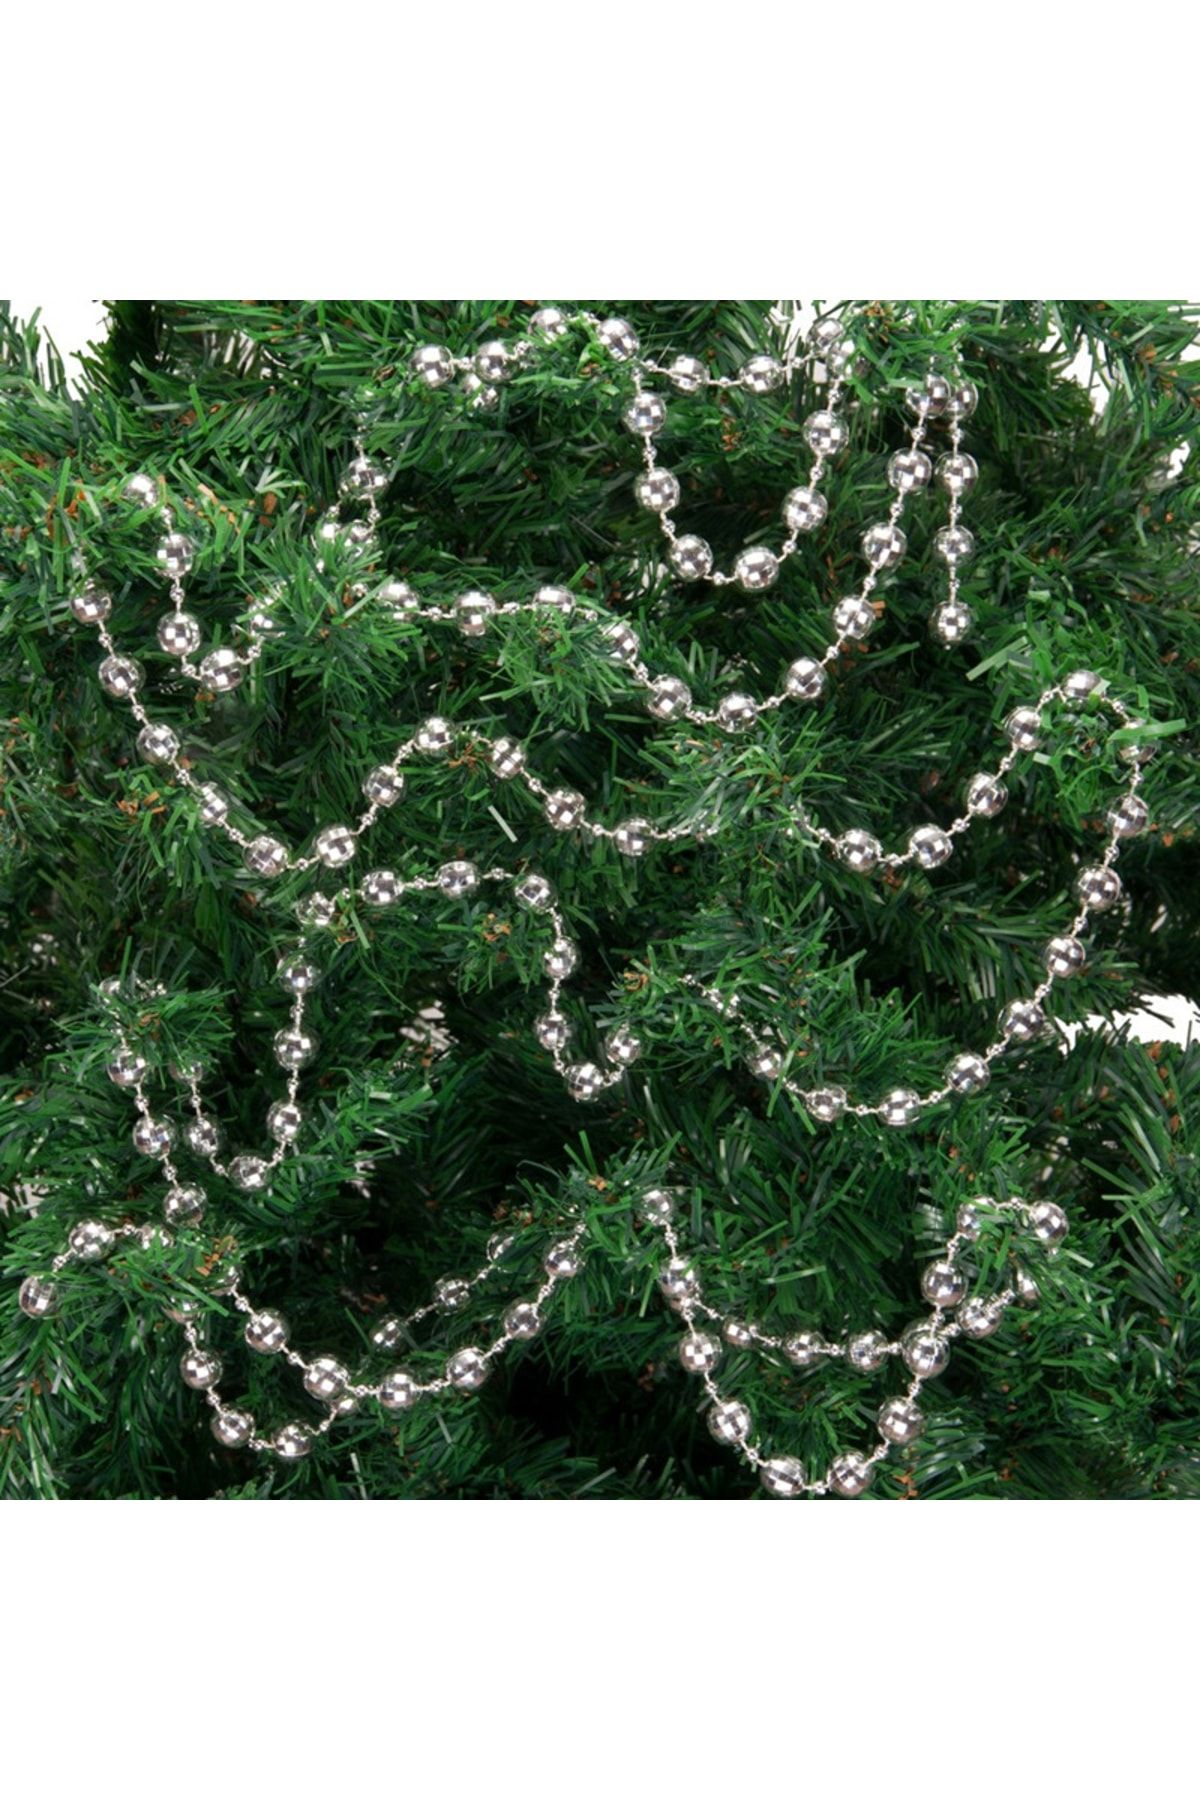 hediyeofisi Yılbaşı Zincir Süs 3mt Yılbaşı Ağaç Süsü Noel Ağaç Süsü Çam Süs